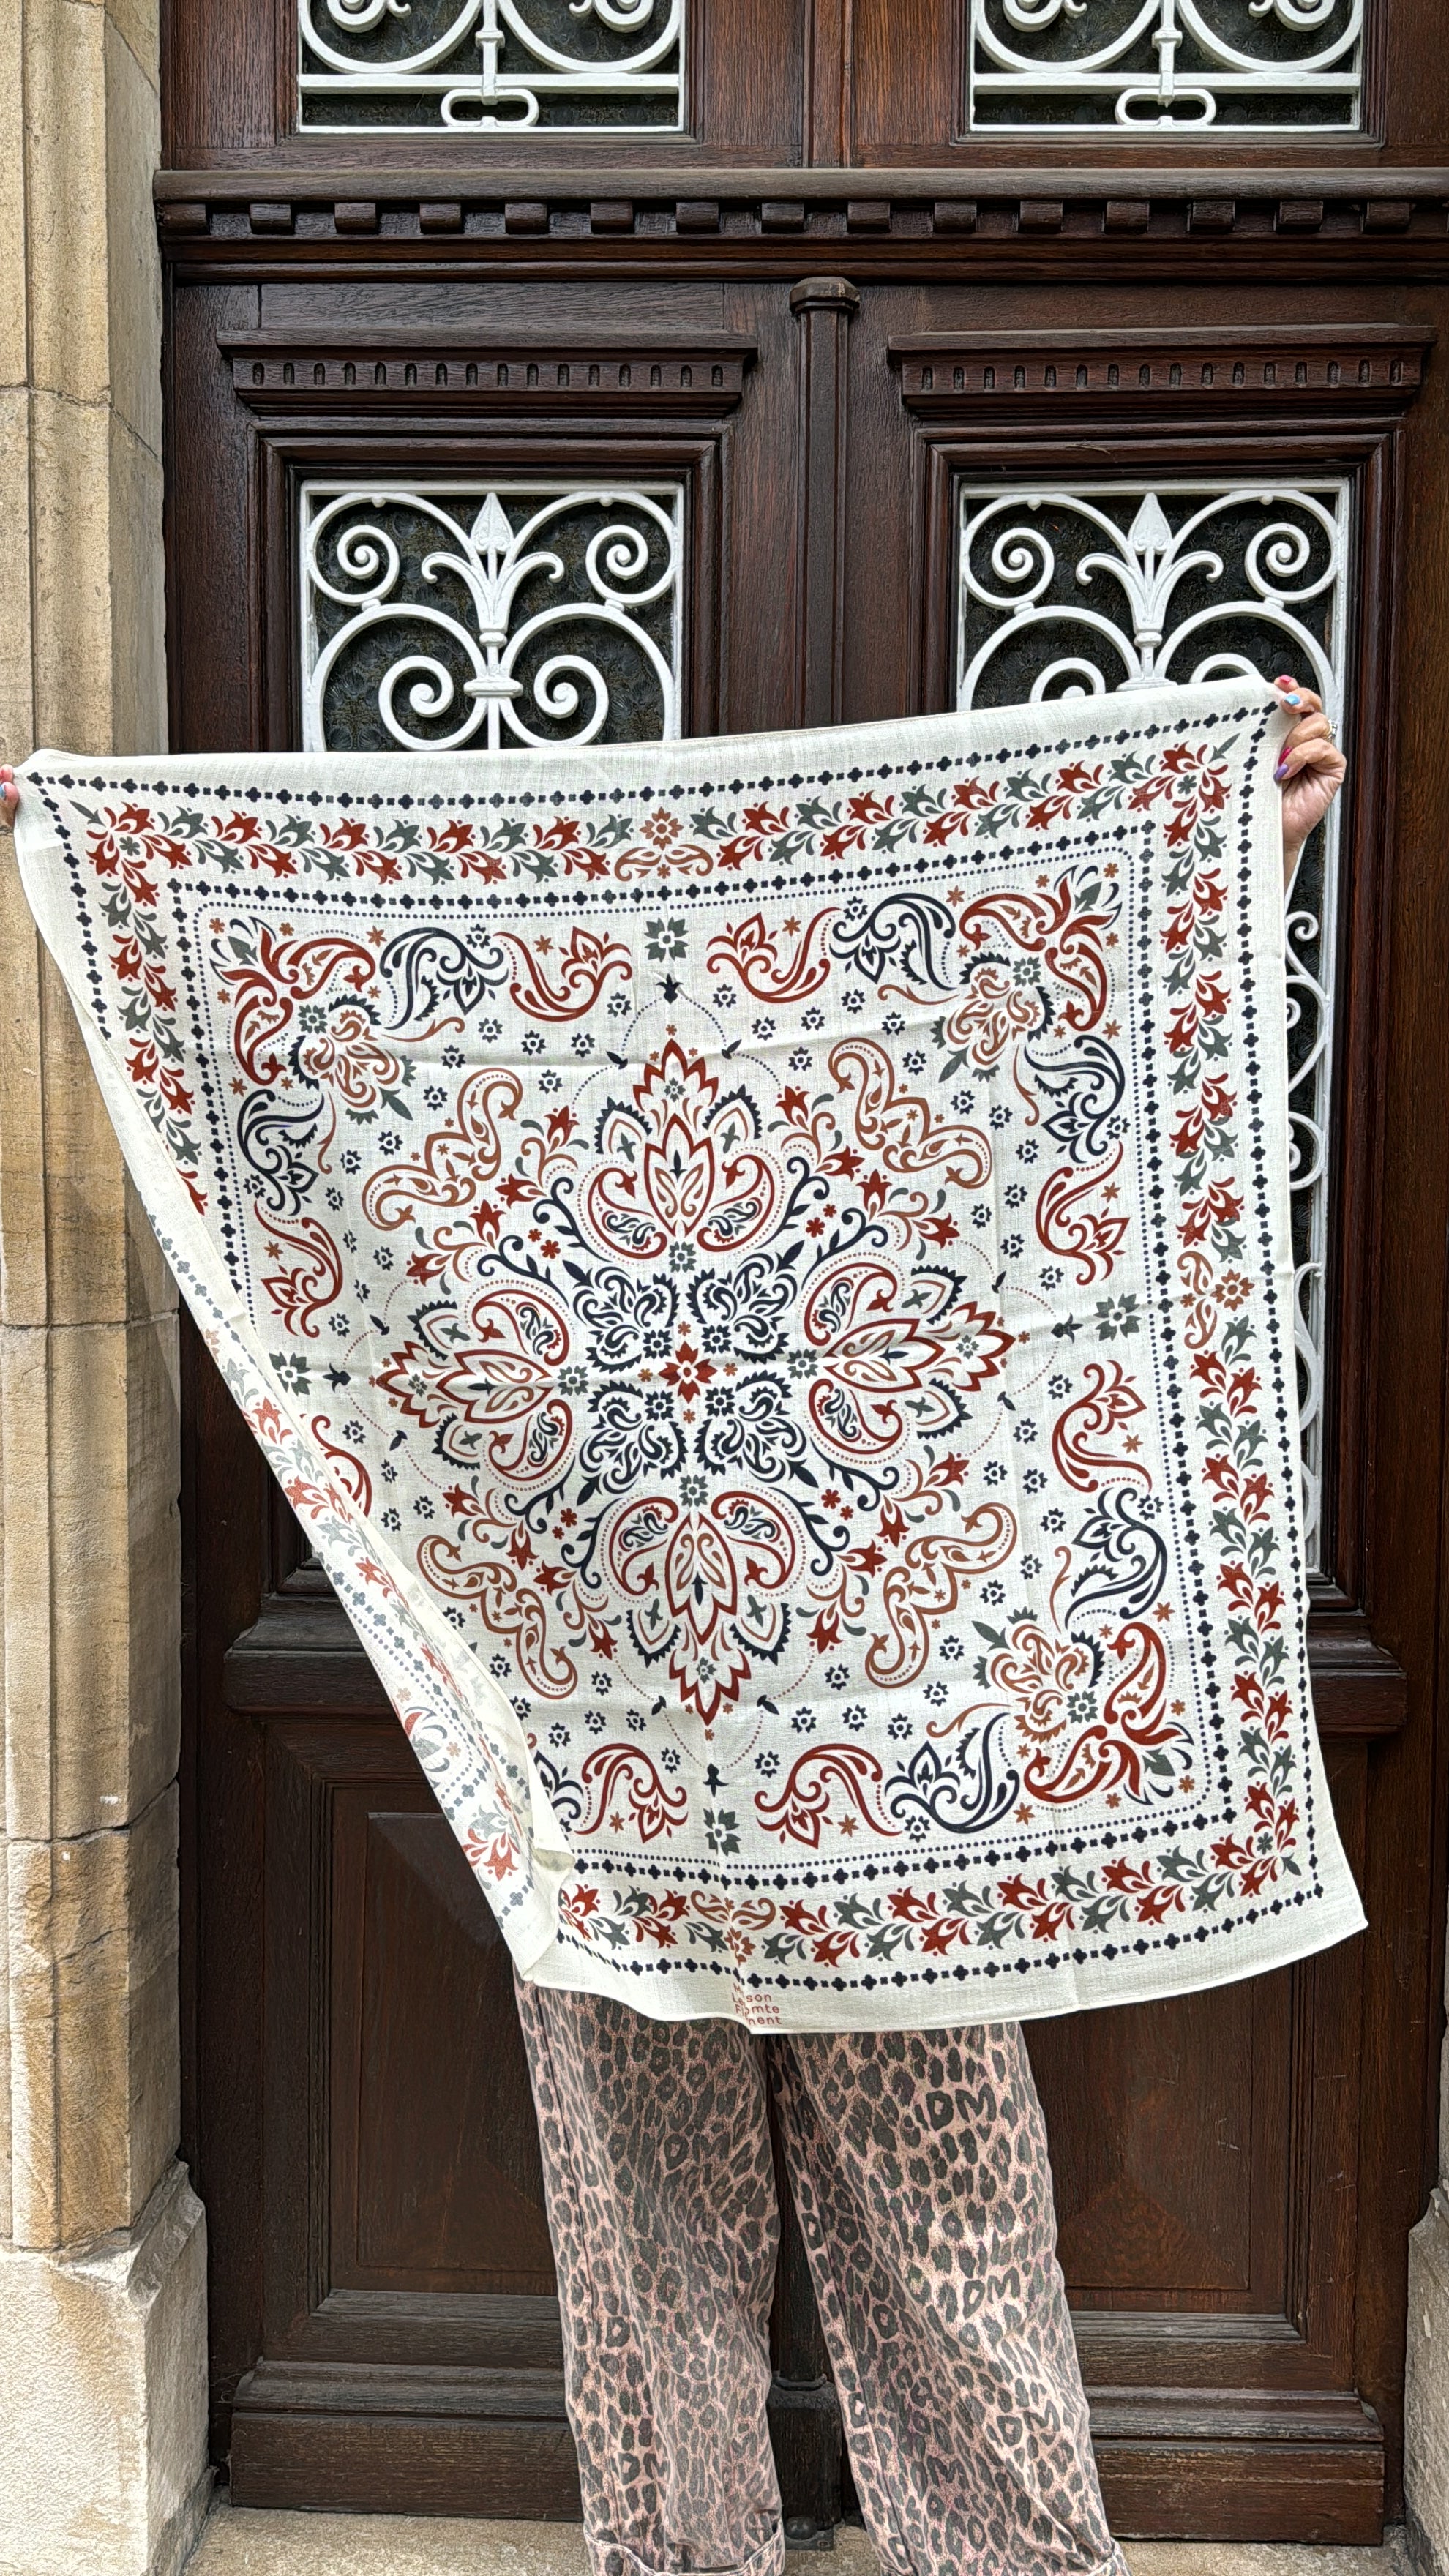 Large Lisboa bandana scarf